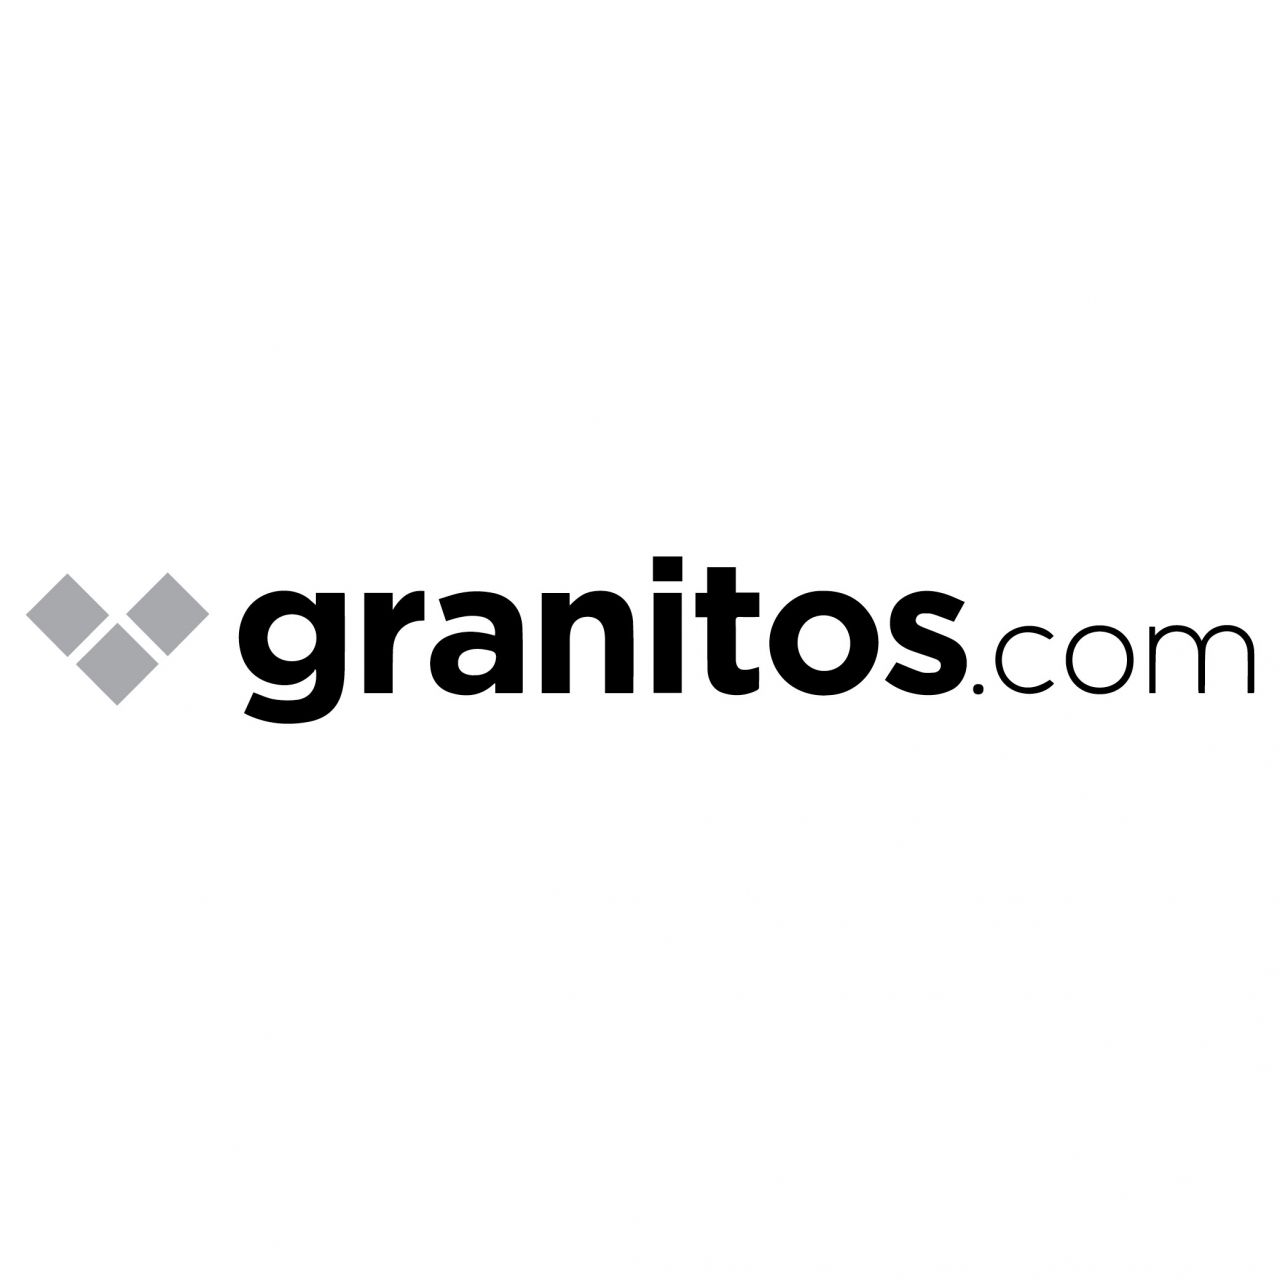 granitos.com